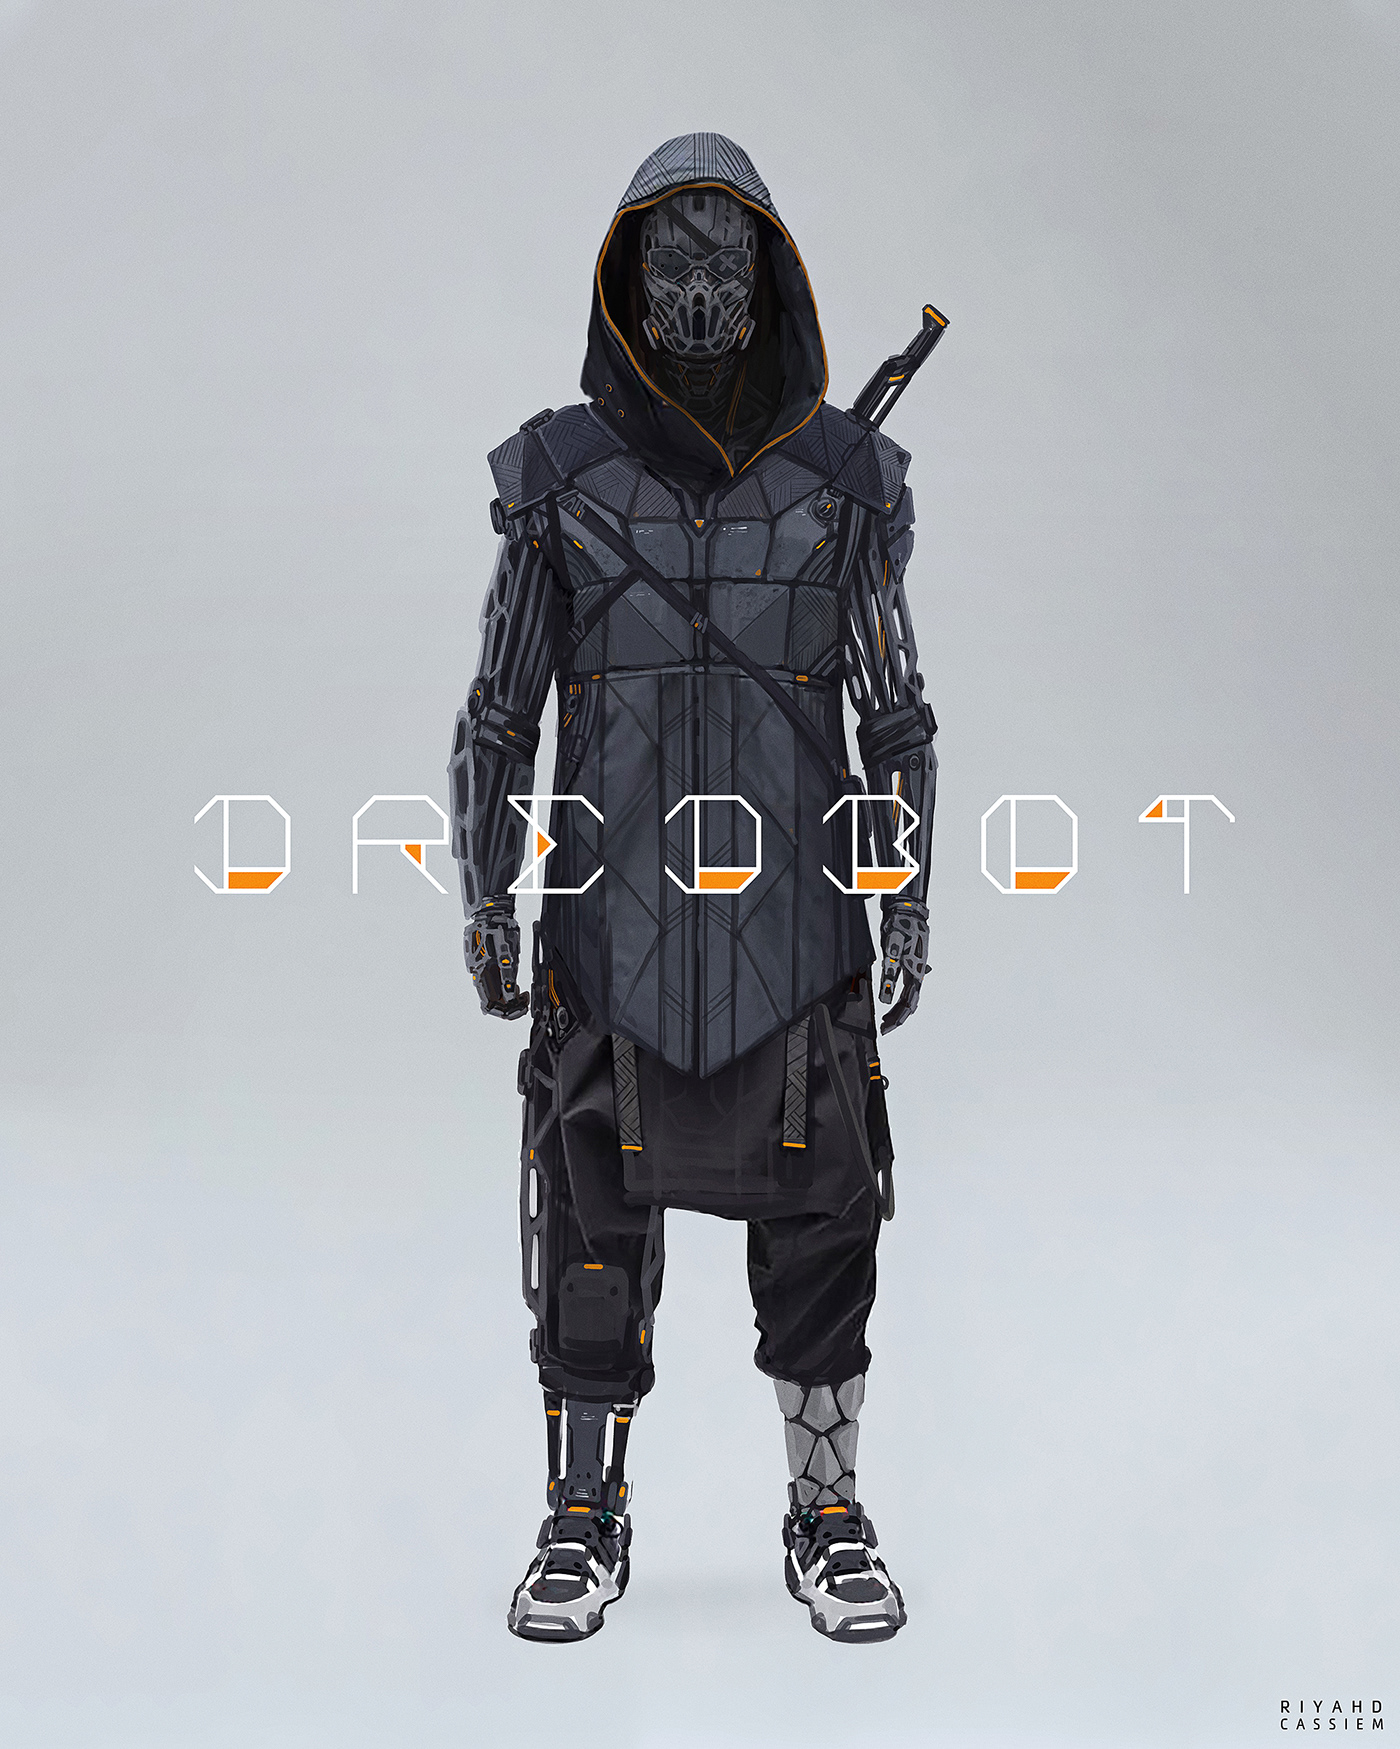 Cyberpunk driod future mech robot Scifi streetwear tech